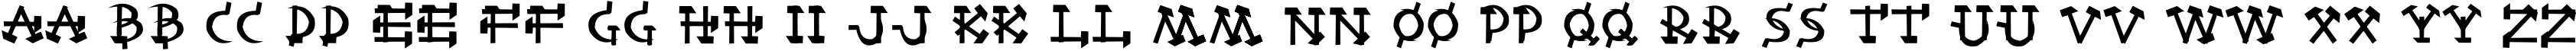 Пример написания английского алфавита шрифтом Castro